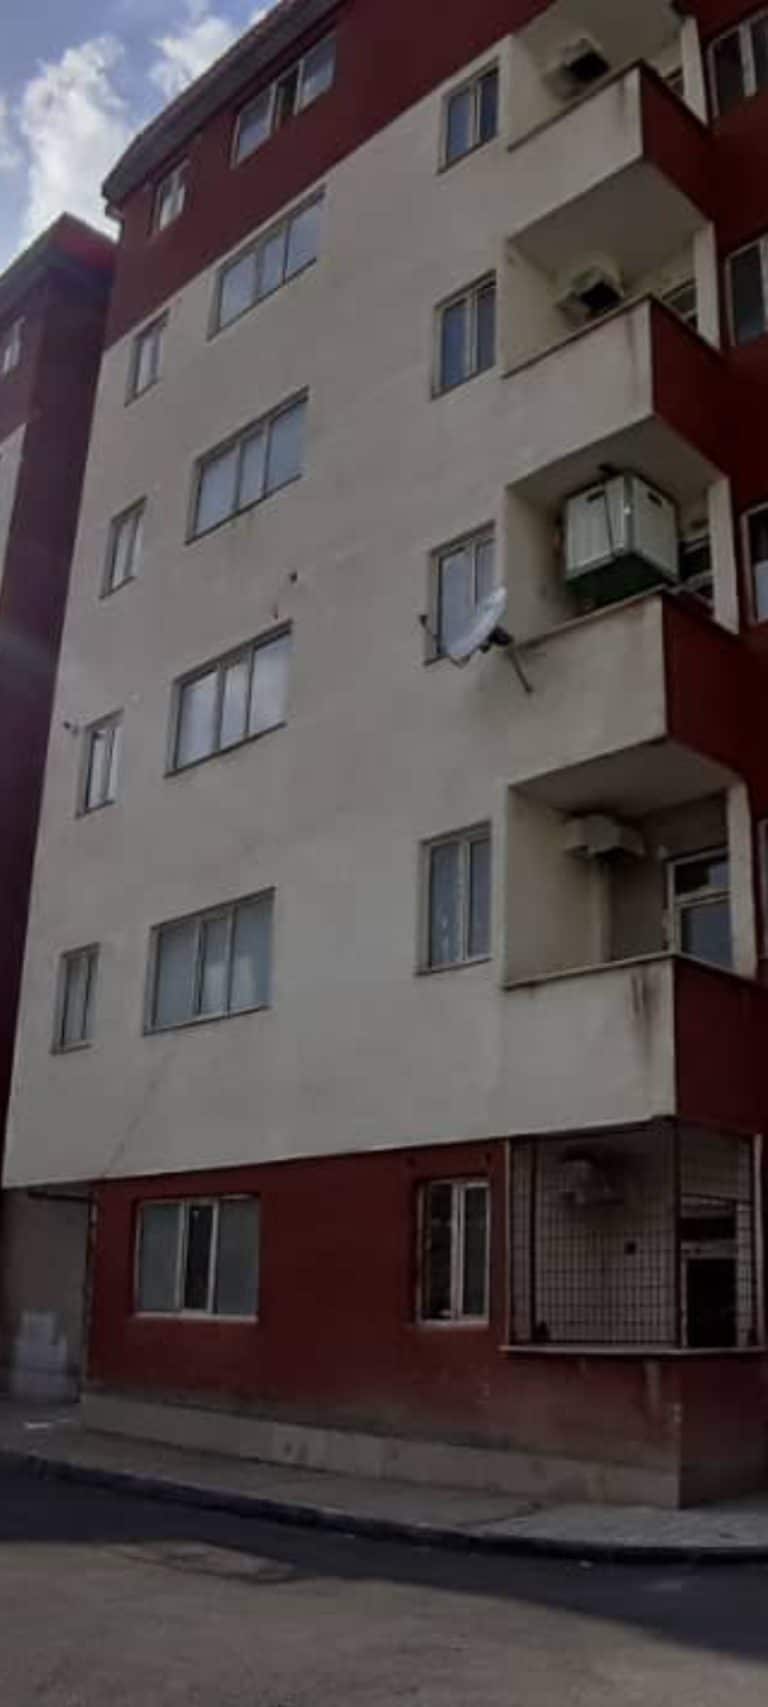 فوش آپارتمان مجتمع ثامن (اولویت) طبقه همکف قیمت 2,150,000,000